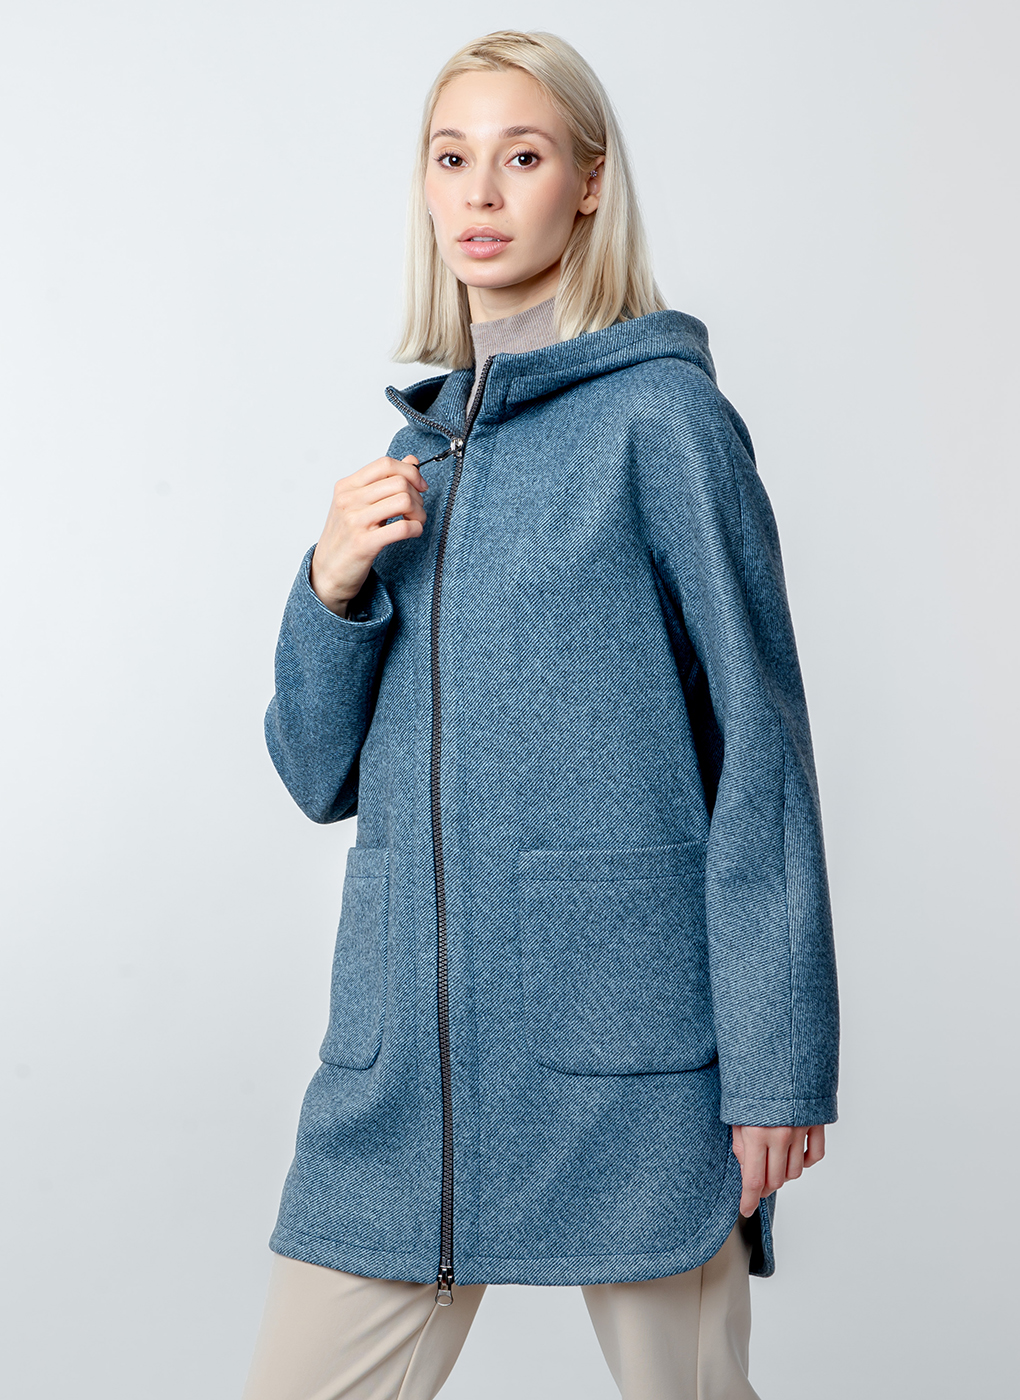 Пальто женское Каляев 52662 синее 44 RU